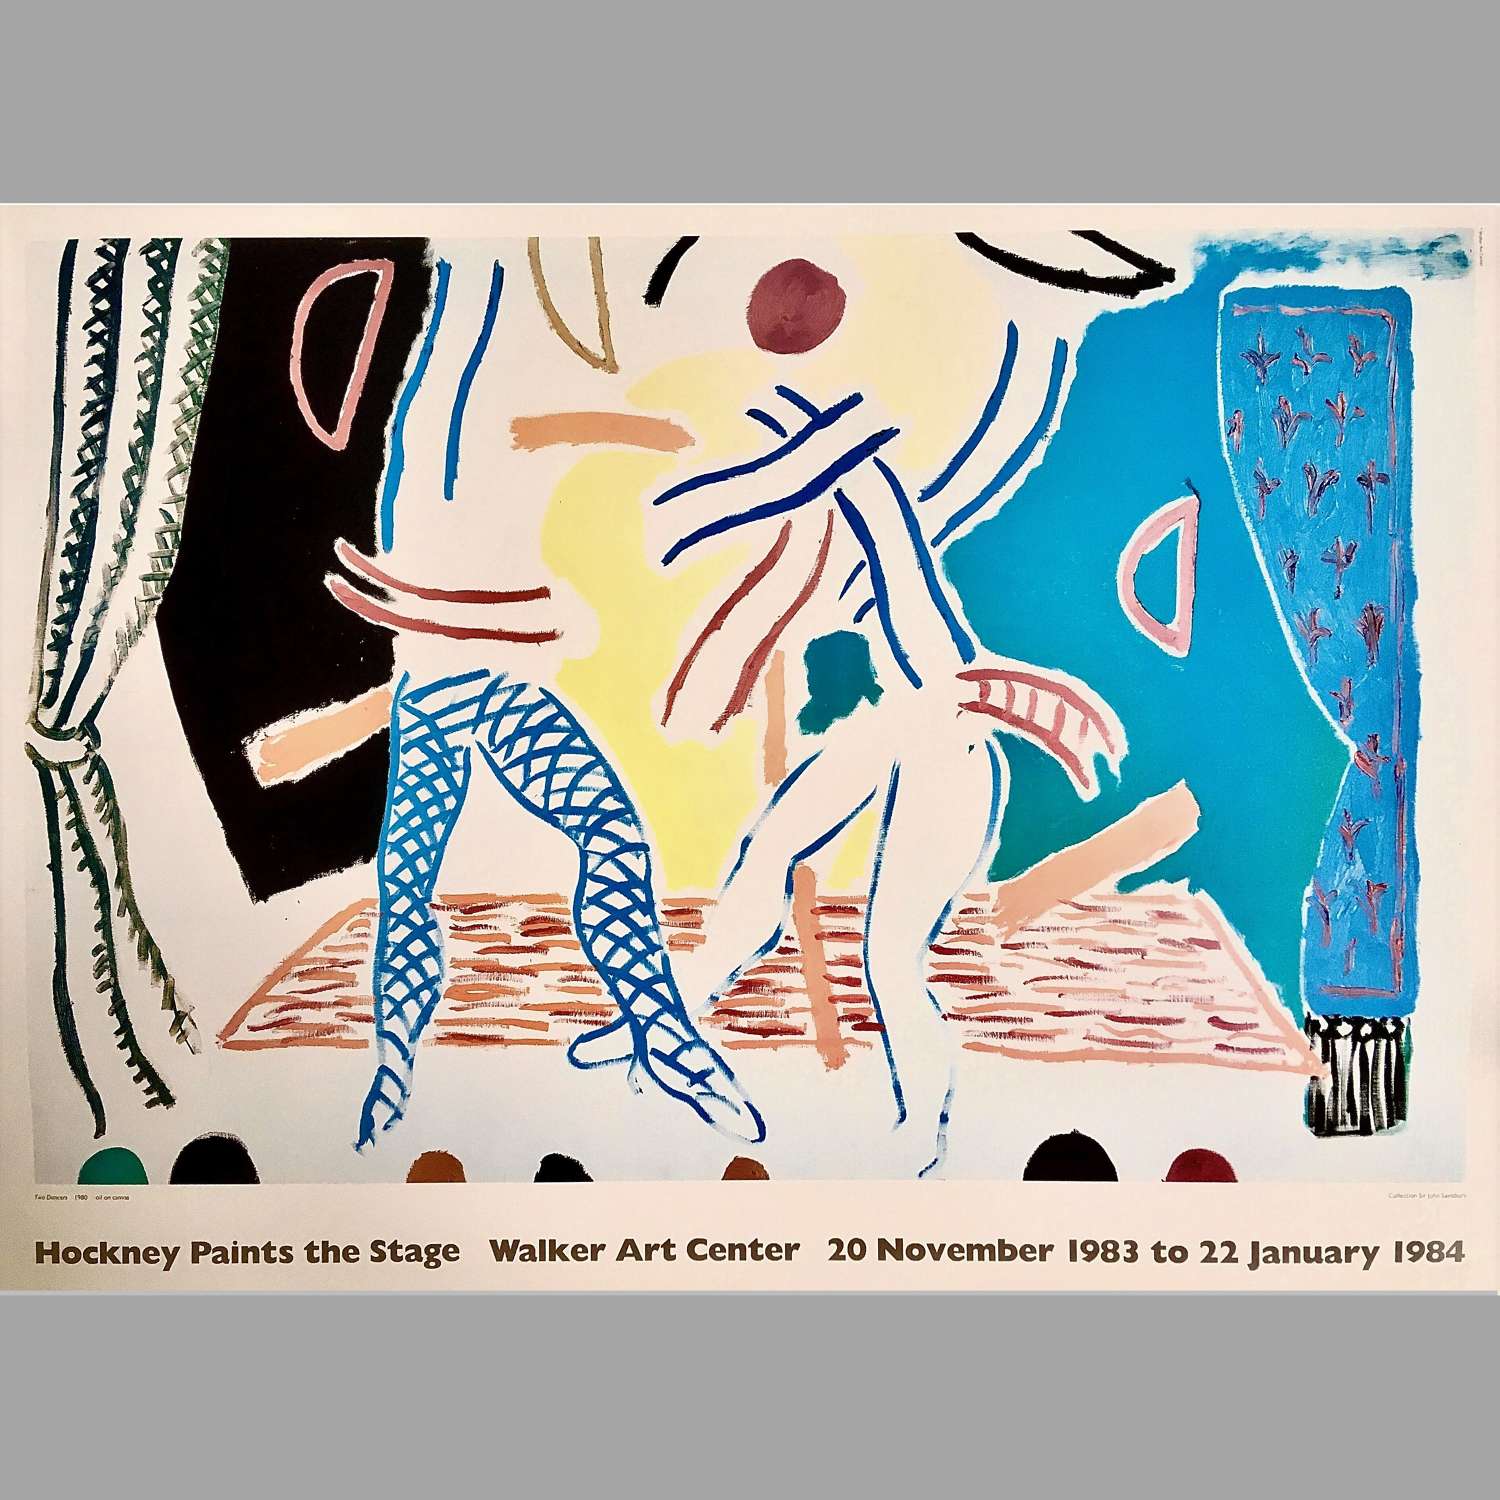 David Hockney (British, b. 1937), 